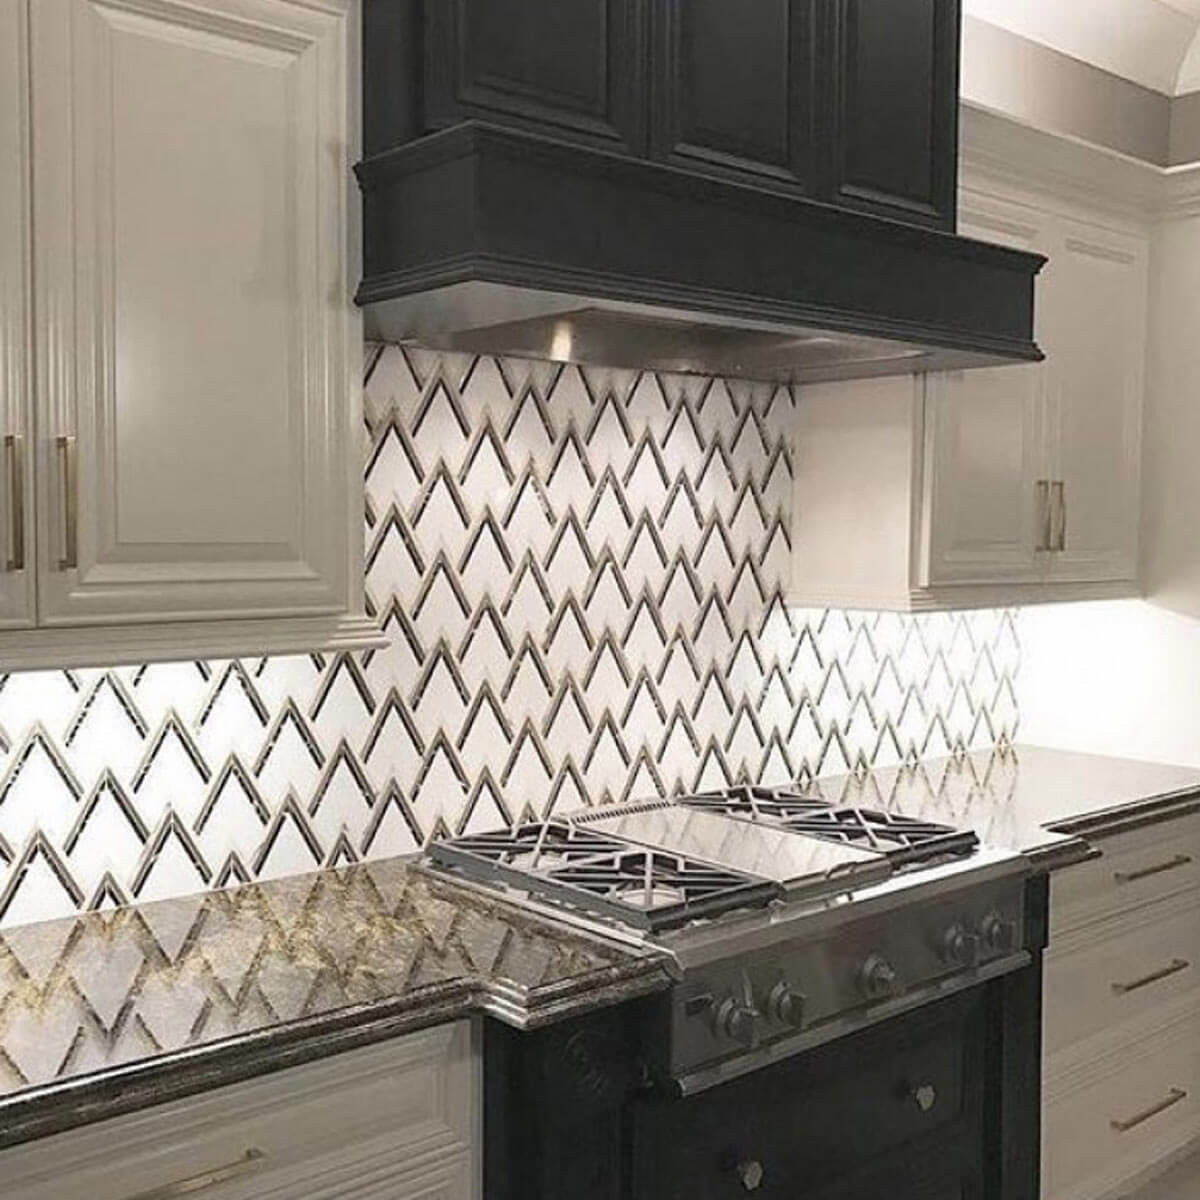 Kitchen Tile Backsplashes Images
 14 Showstopping Tile Backsplash Ideas To Suit Any Style